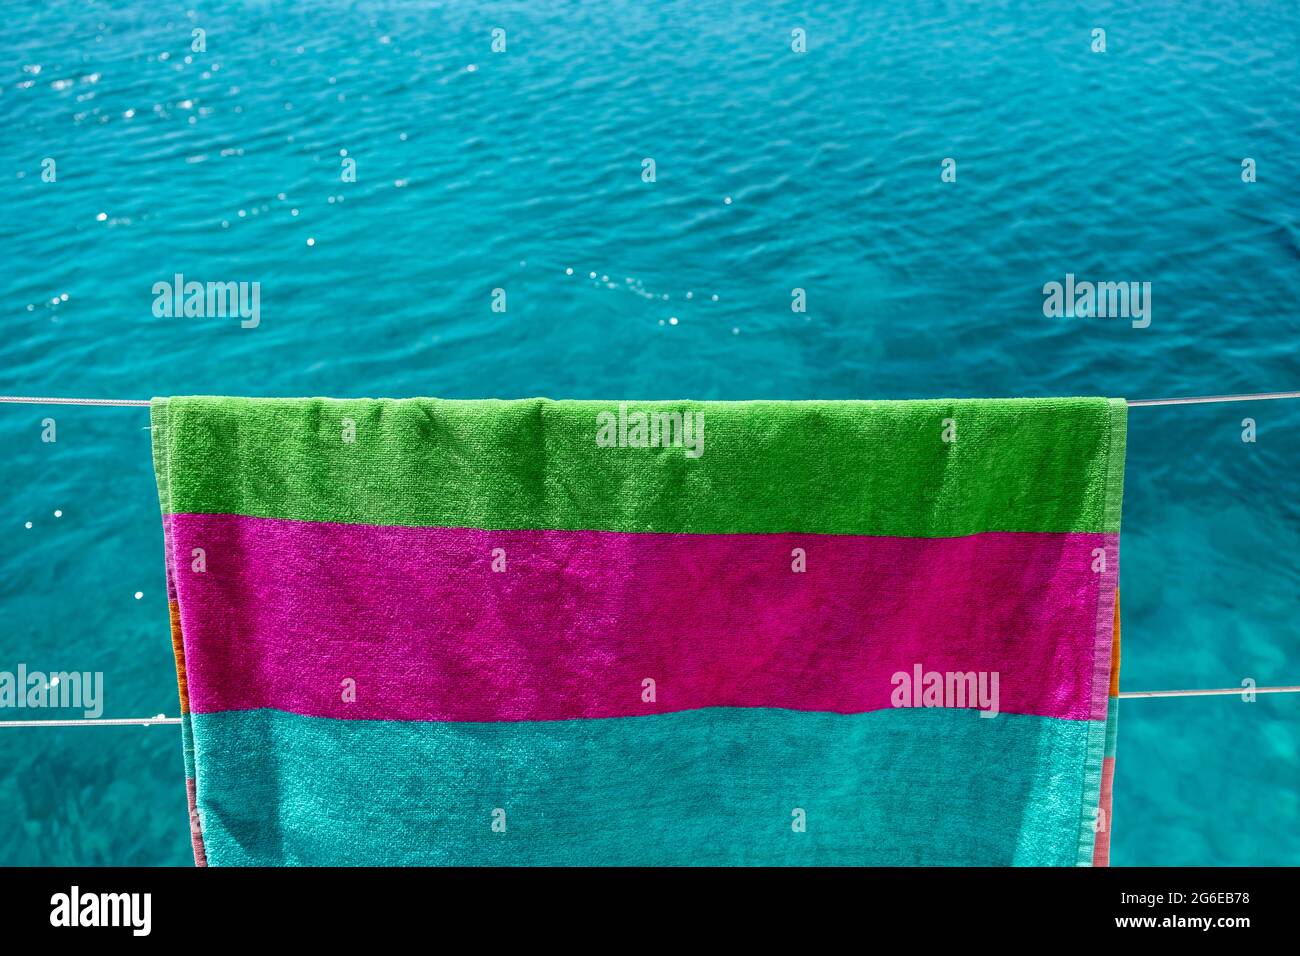 Strandtuch trocknen auf Wäscheleine, verwischen Meereshintergrund. Buntes Handtuch, das an der Edelstahlschiene des Bootes hängt. Sommerferien und Segeln, Wäsche waschen und Stockfoto